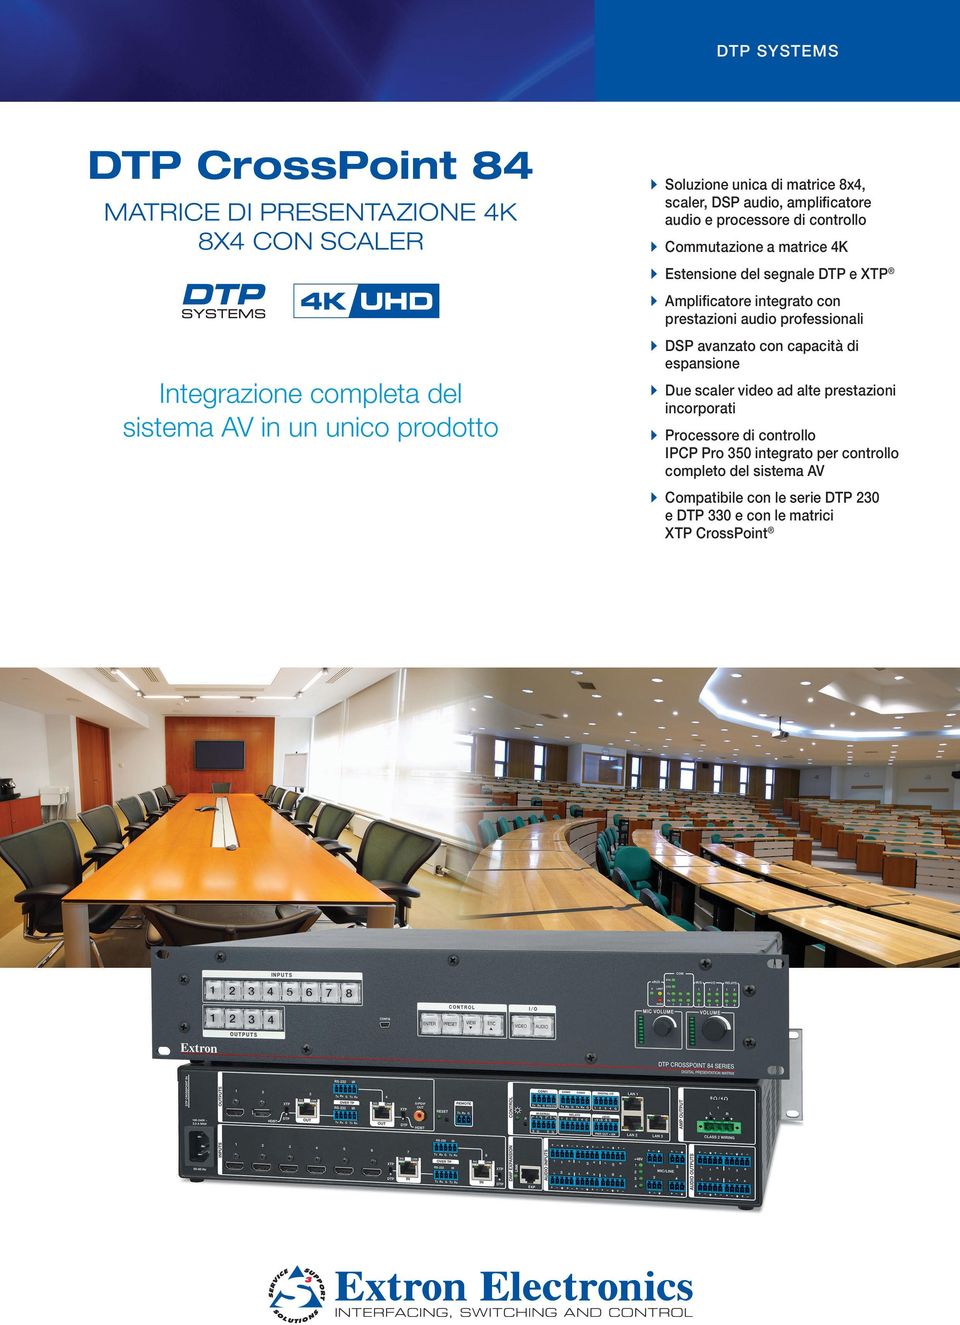 Amplificatore integrato con prestazioni audio professionali DSP avanzato con capacità di espansione Due scaler video ad alte prestazioni